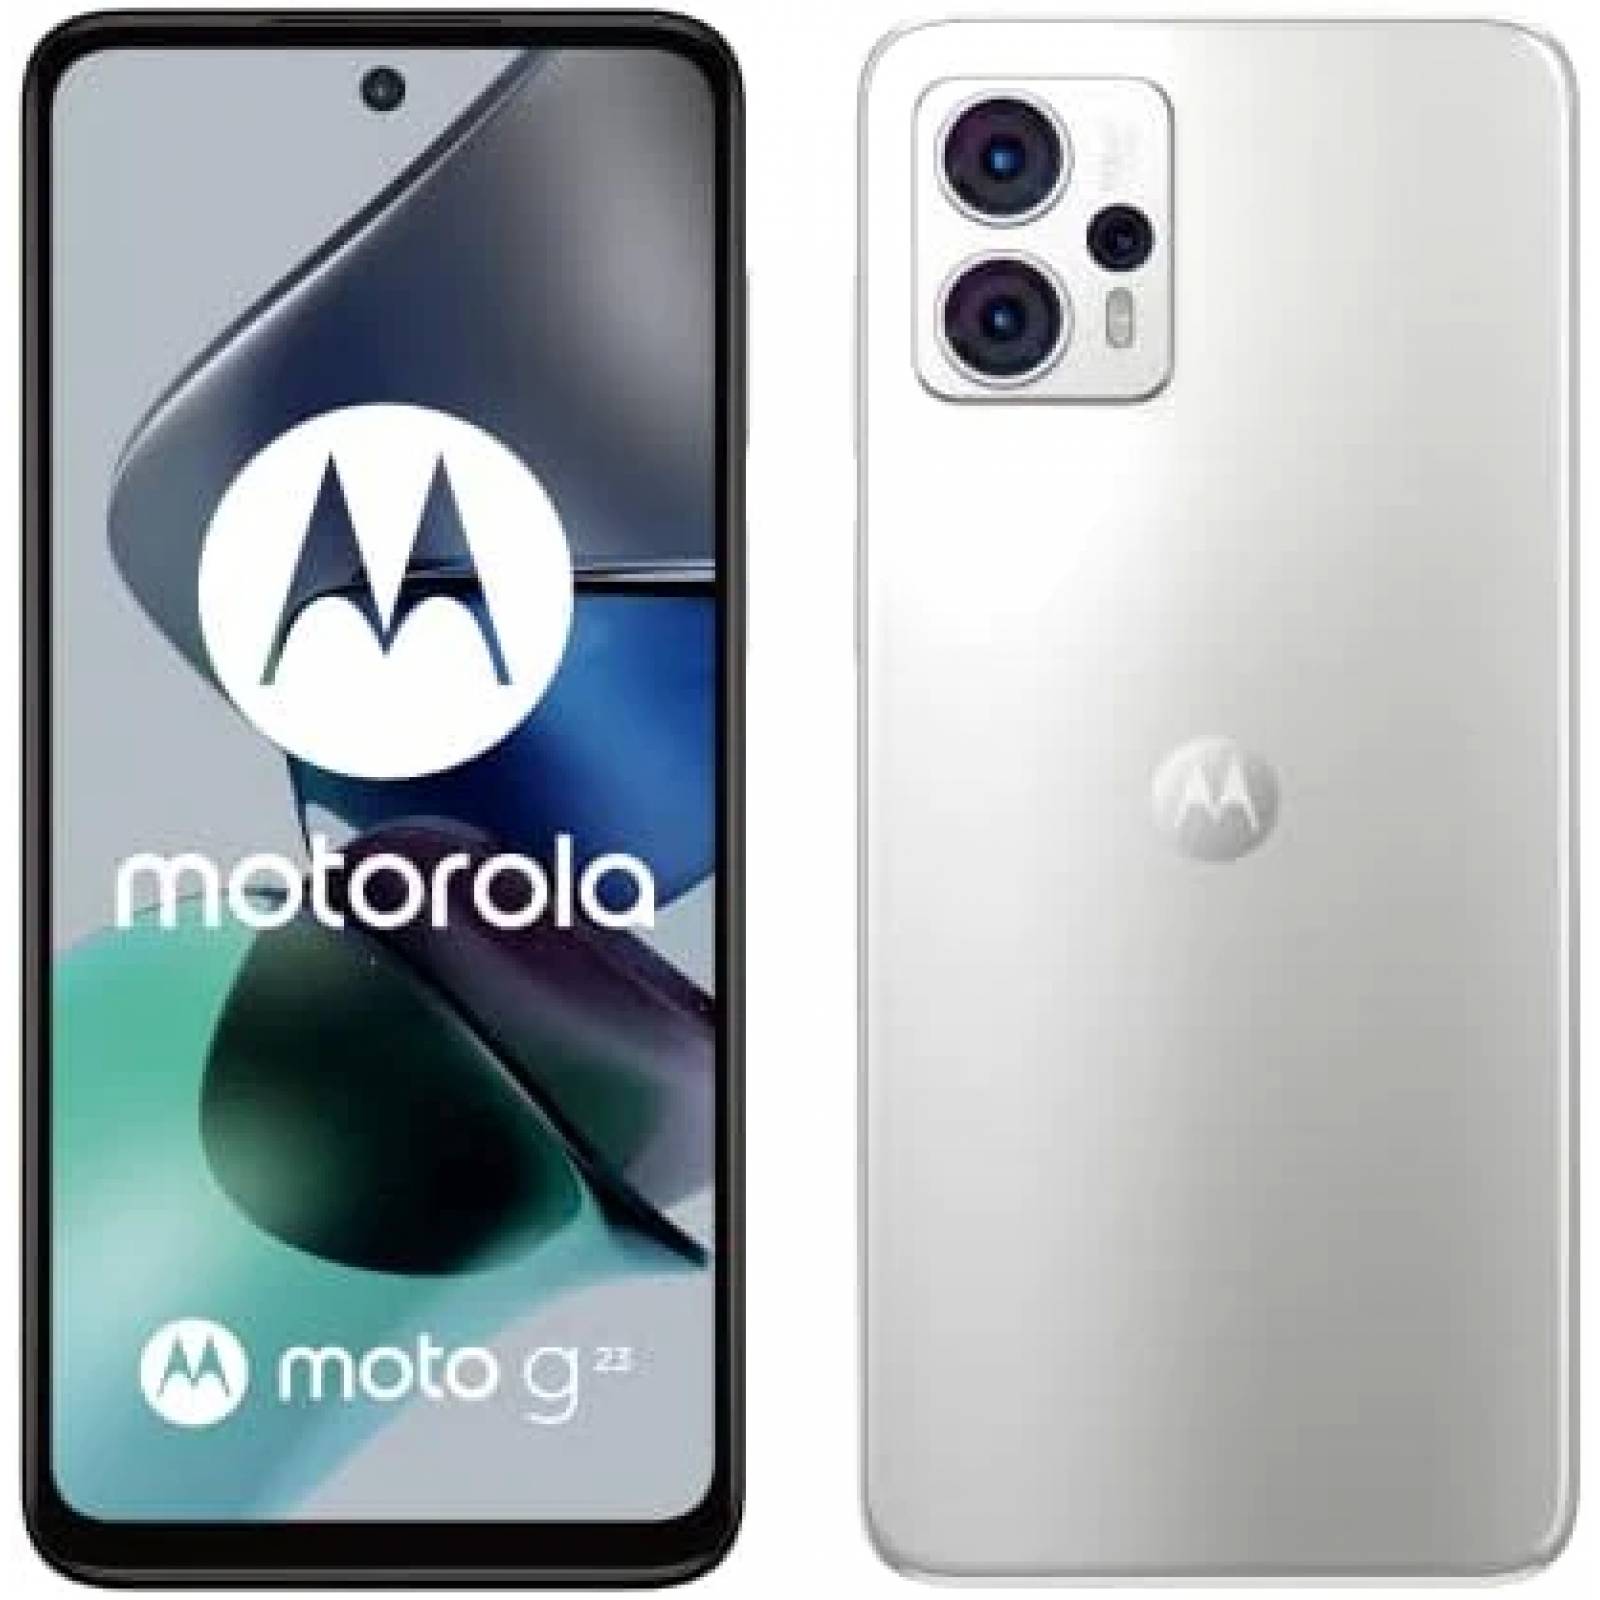 NO COMPRES el Motorola Moto G23 sin ver este video 